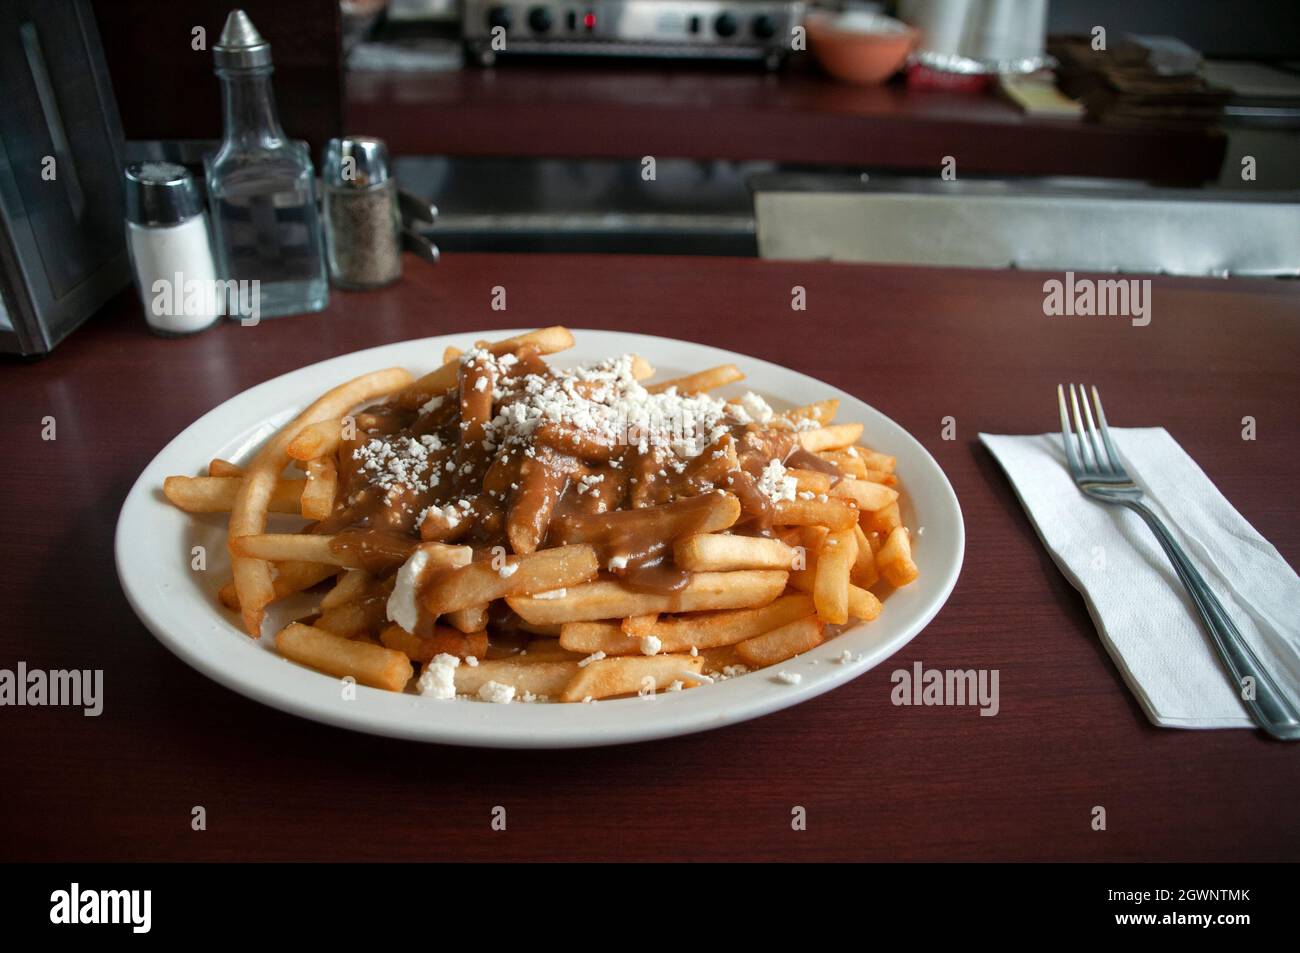 Ein Teller mit griechischem Poutine mit Feta-Käse, eine Art kultiges kanadisches Gericht, das in einem traditionellen Restaurant in Toronto, Kanada, serviert wird. Stockfoto